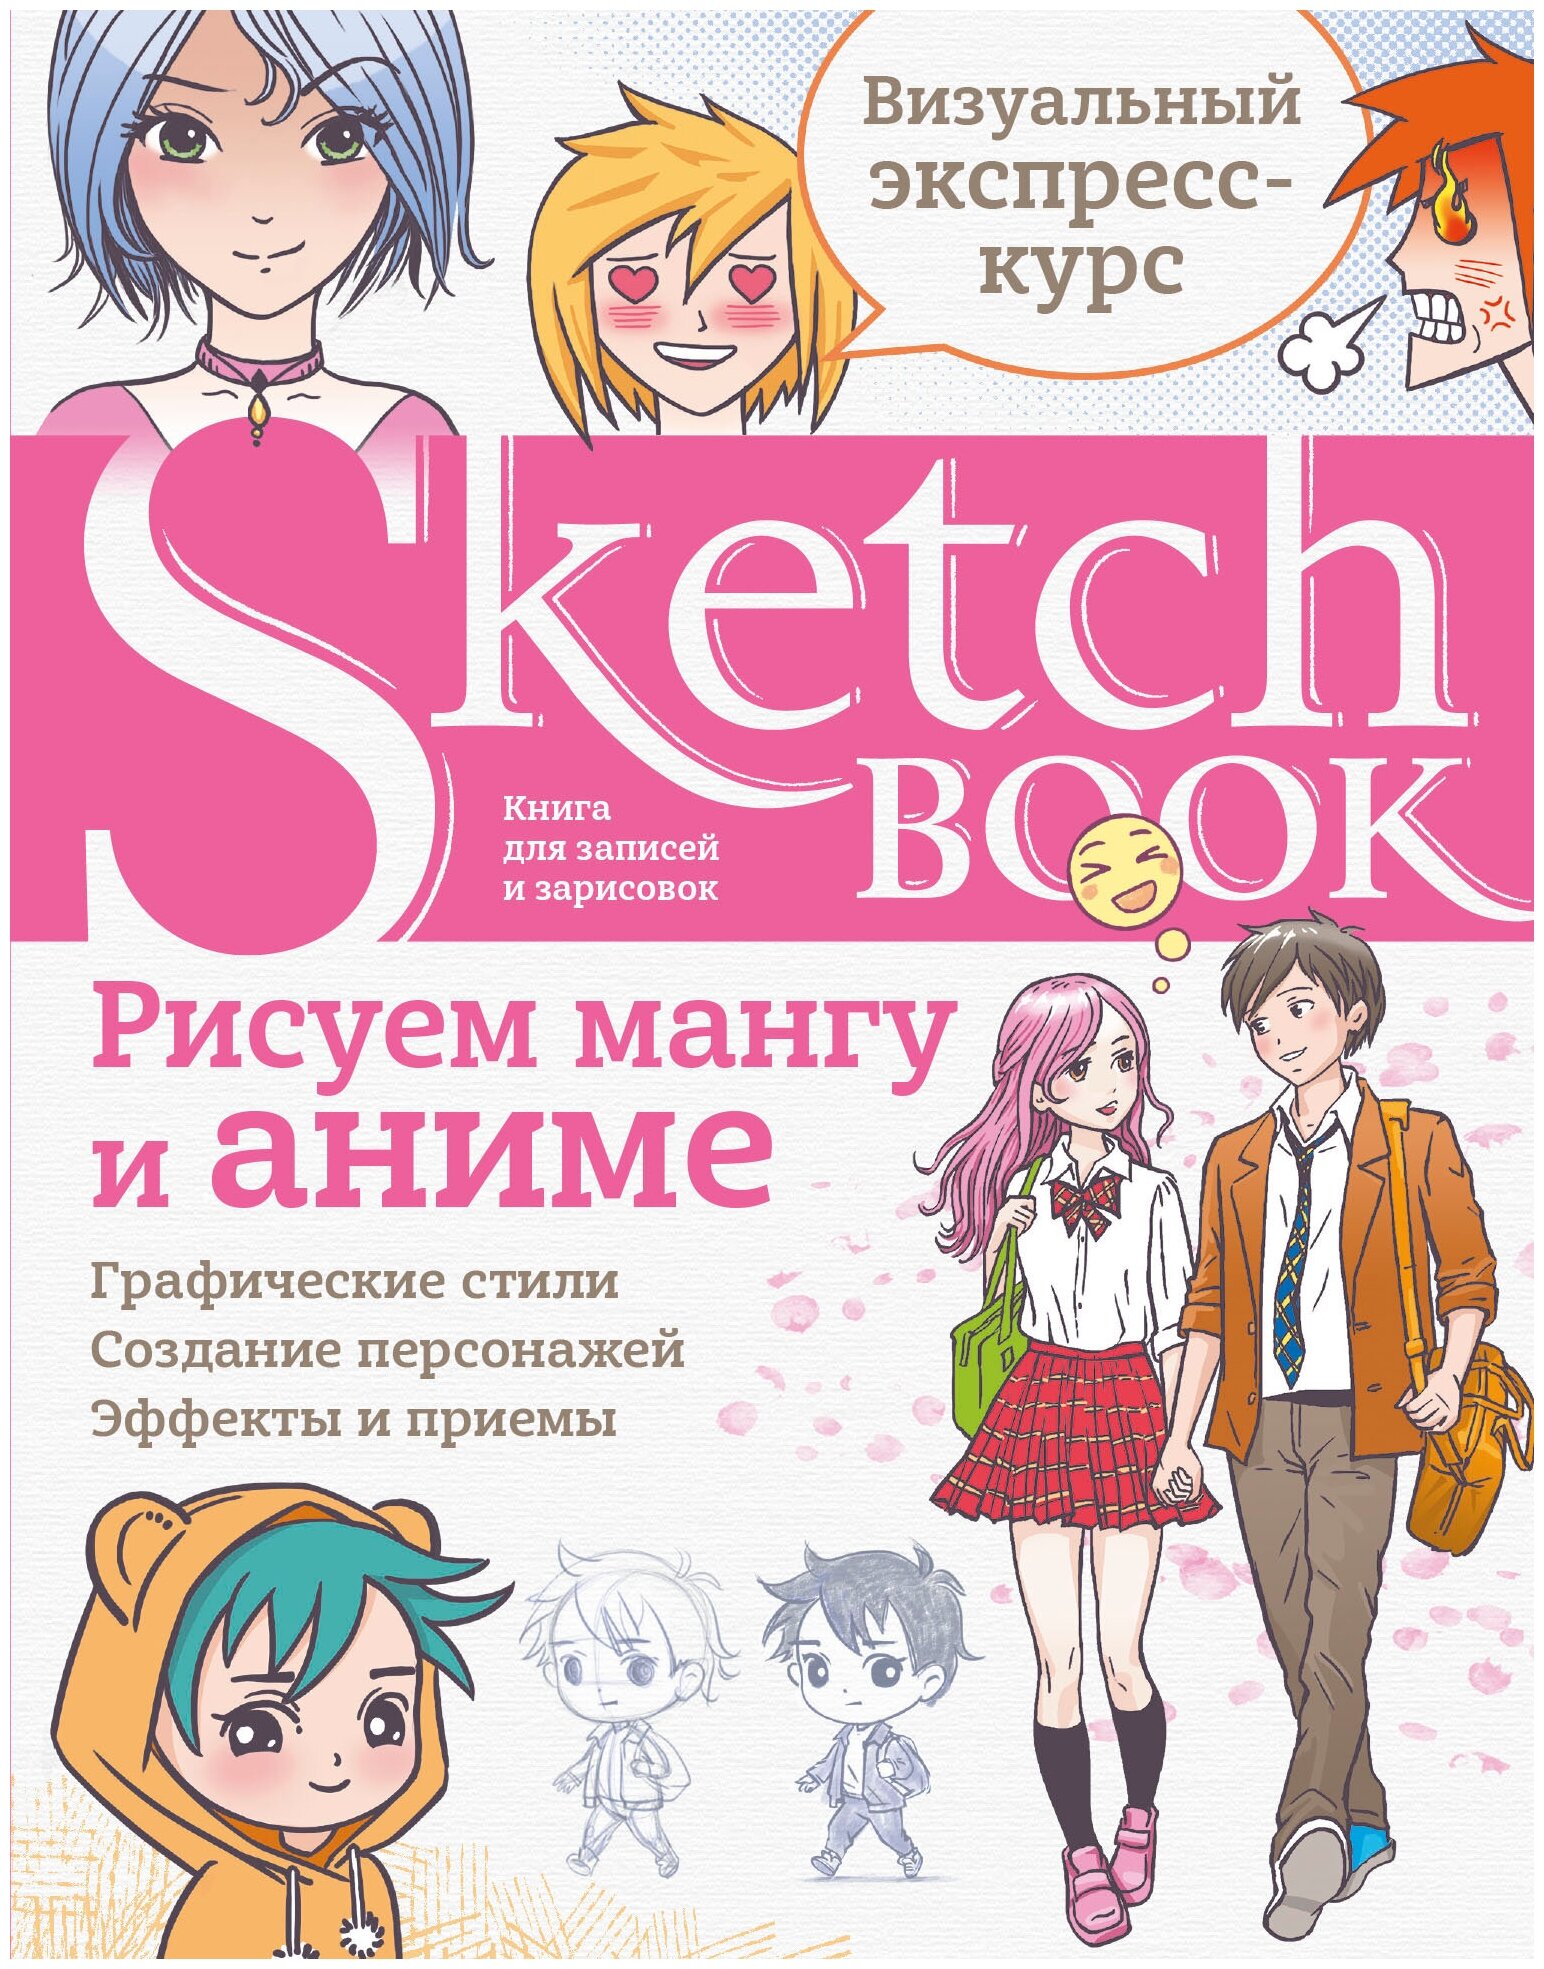 Sketchbook. Рисуем мангу и аниме - фото №20